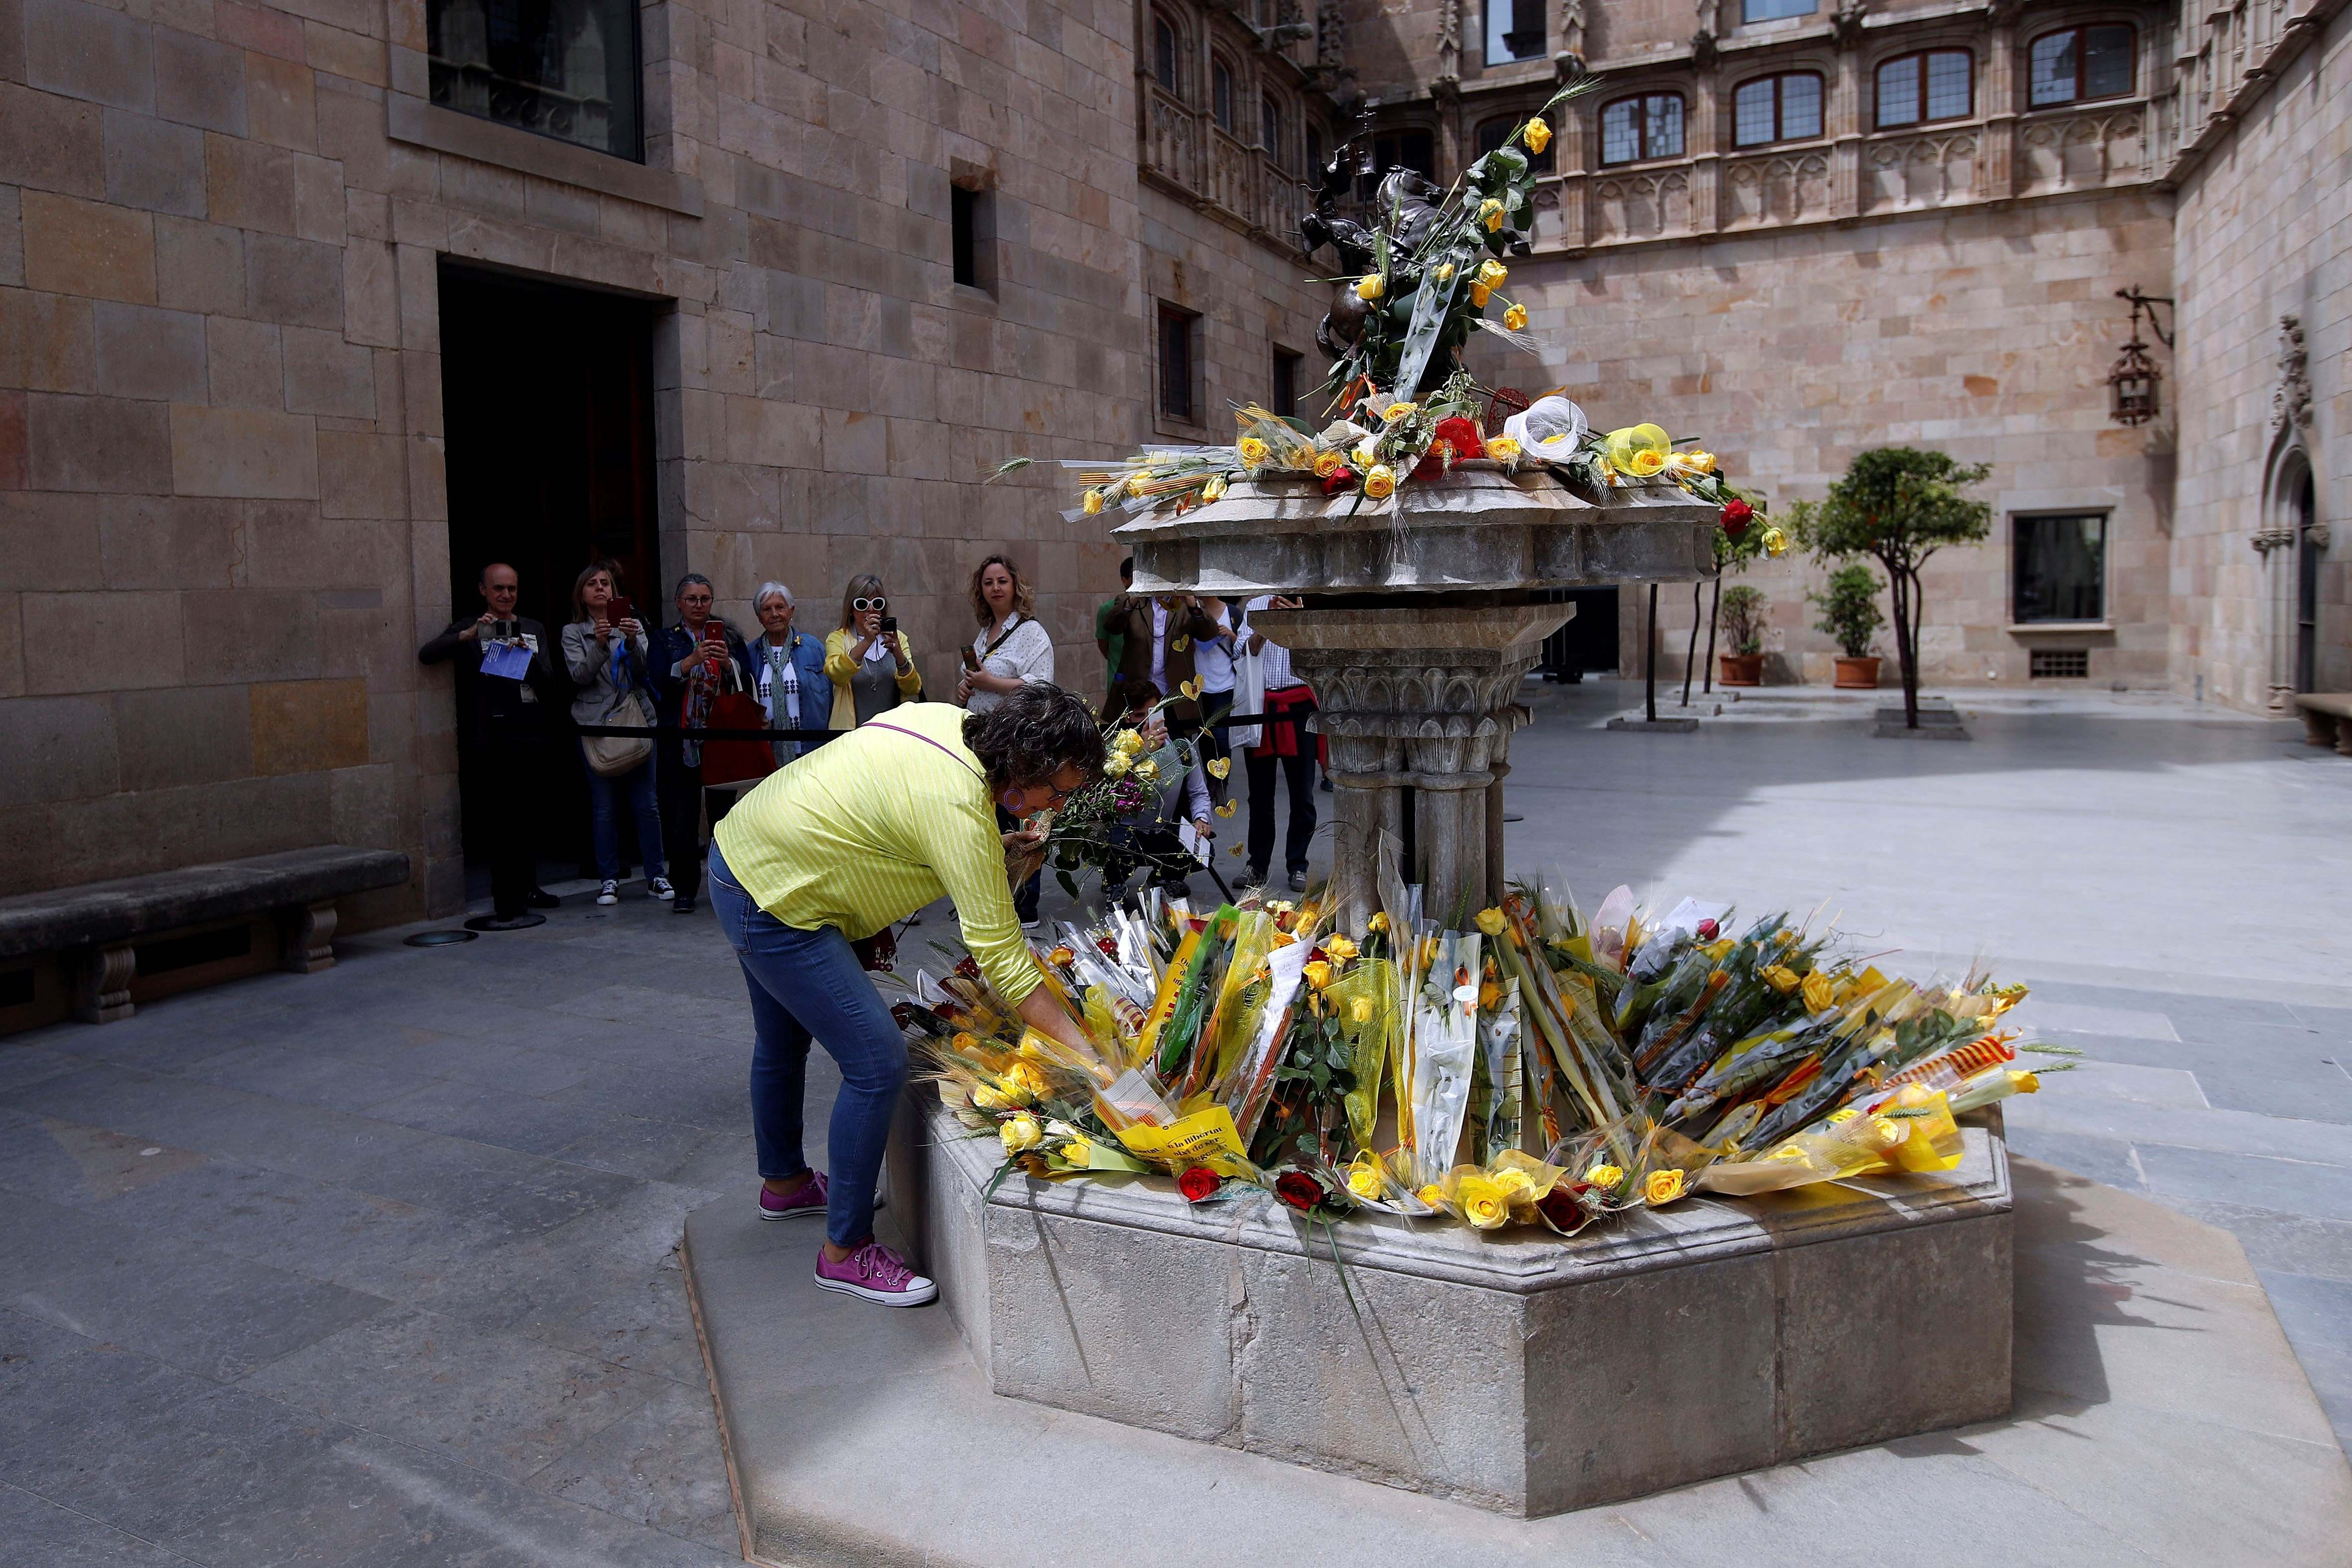 7 meses de artículo 155: balance de daños al autogobierno de Catalunya